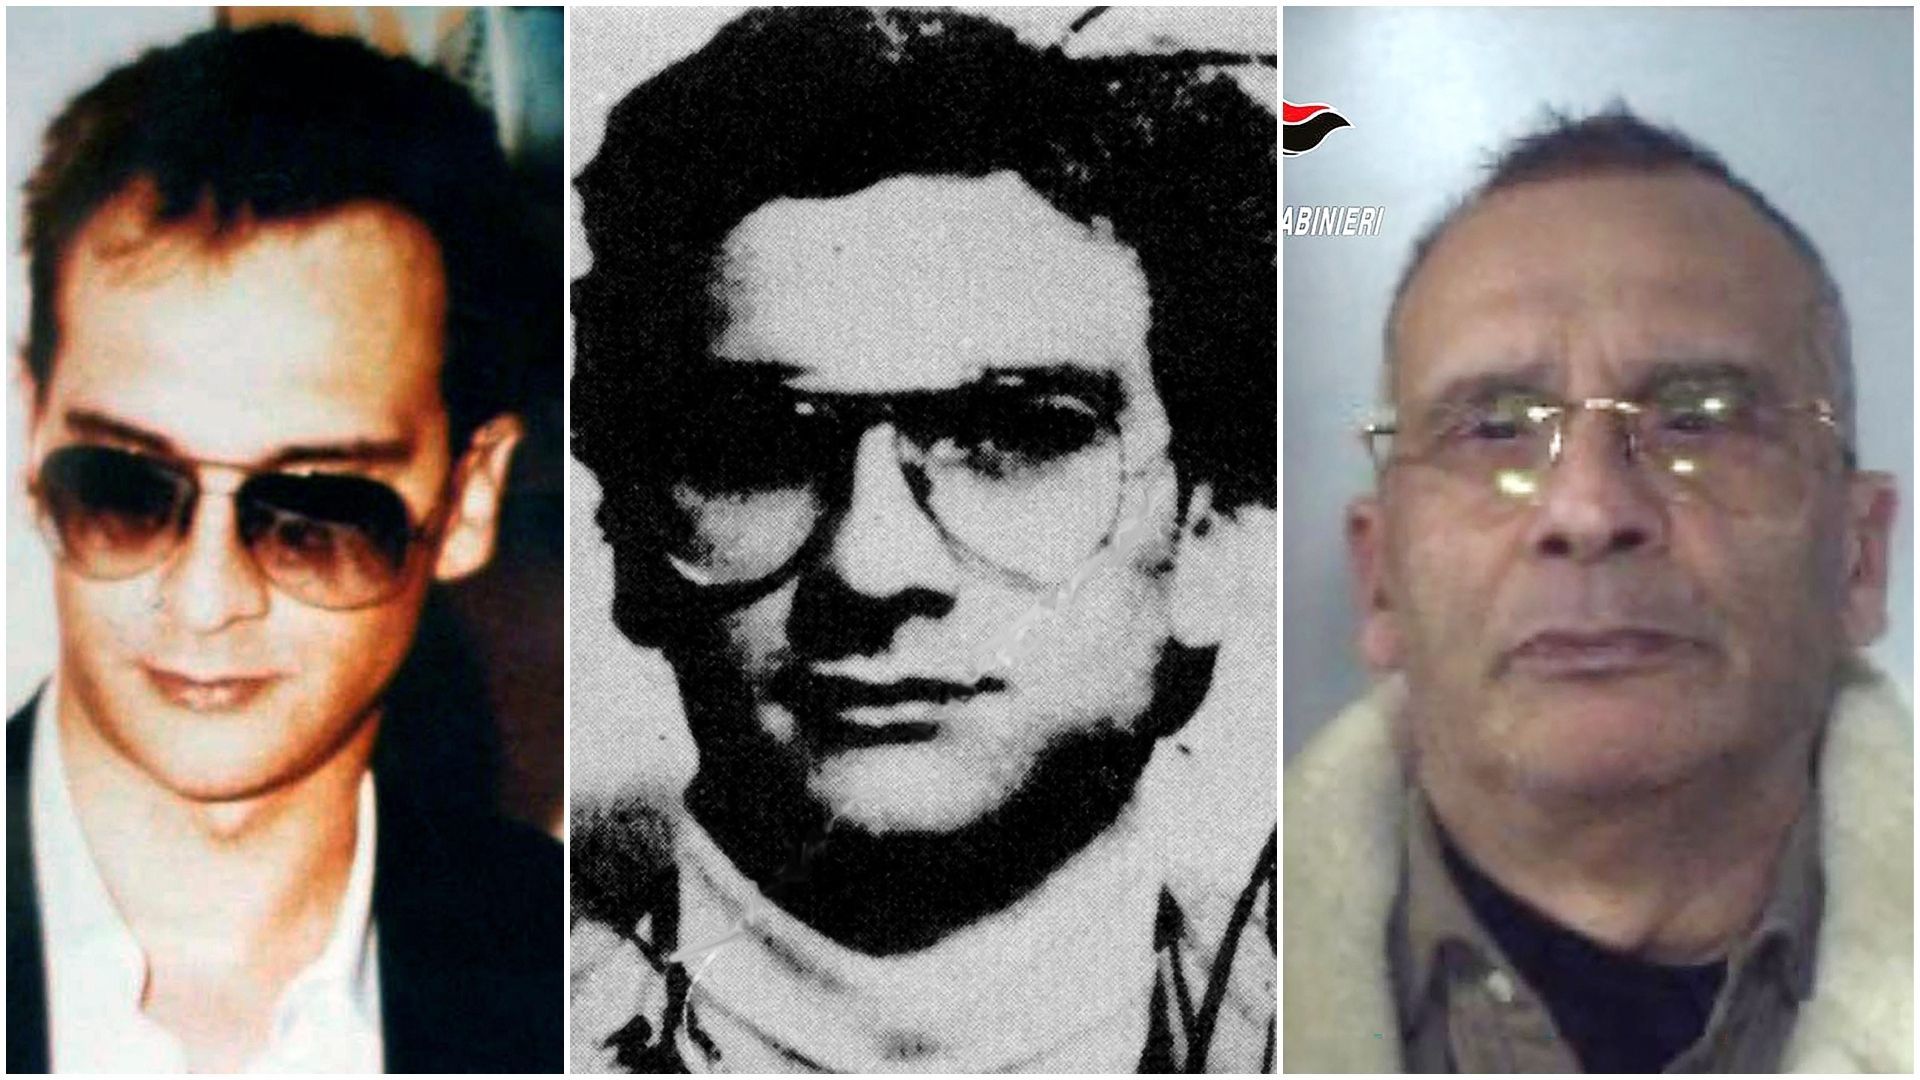 Muore il boss mafioso Messina Denaro, spietato killer, catturato a gennaio dopo 30 anni di latitanza